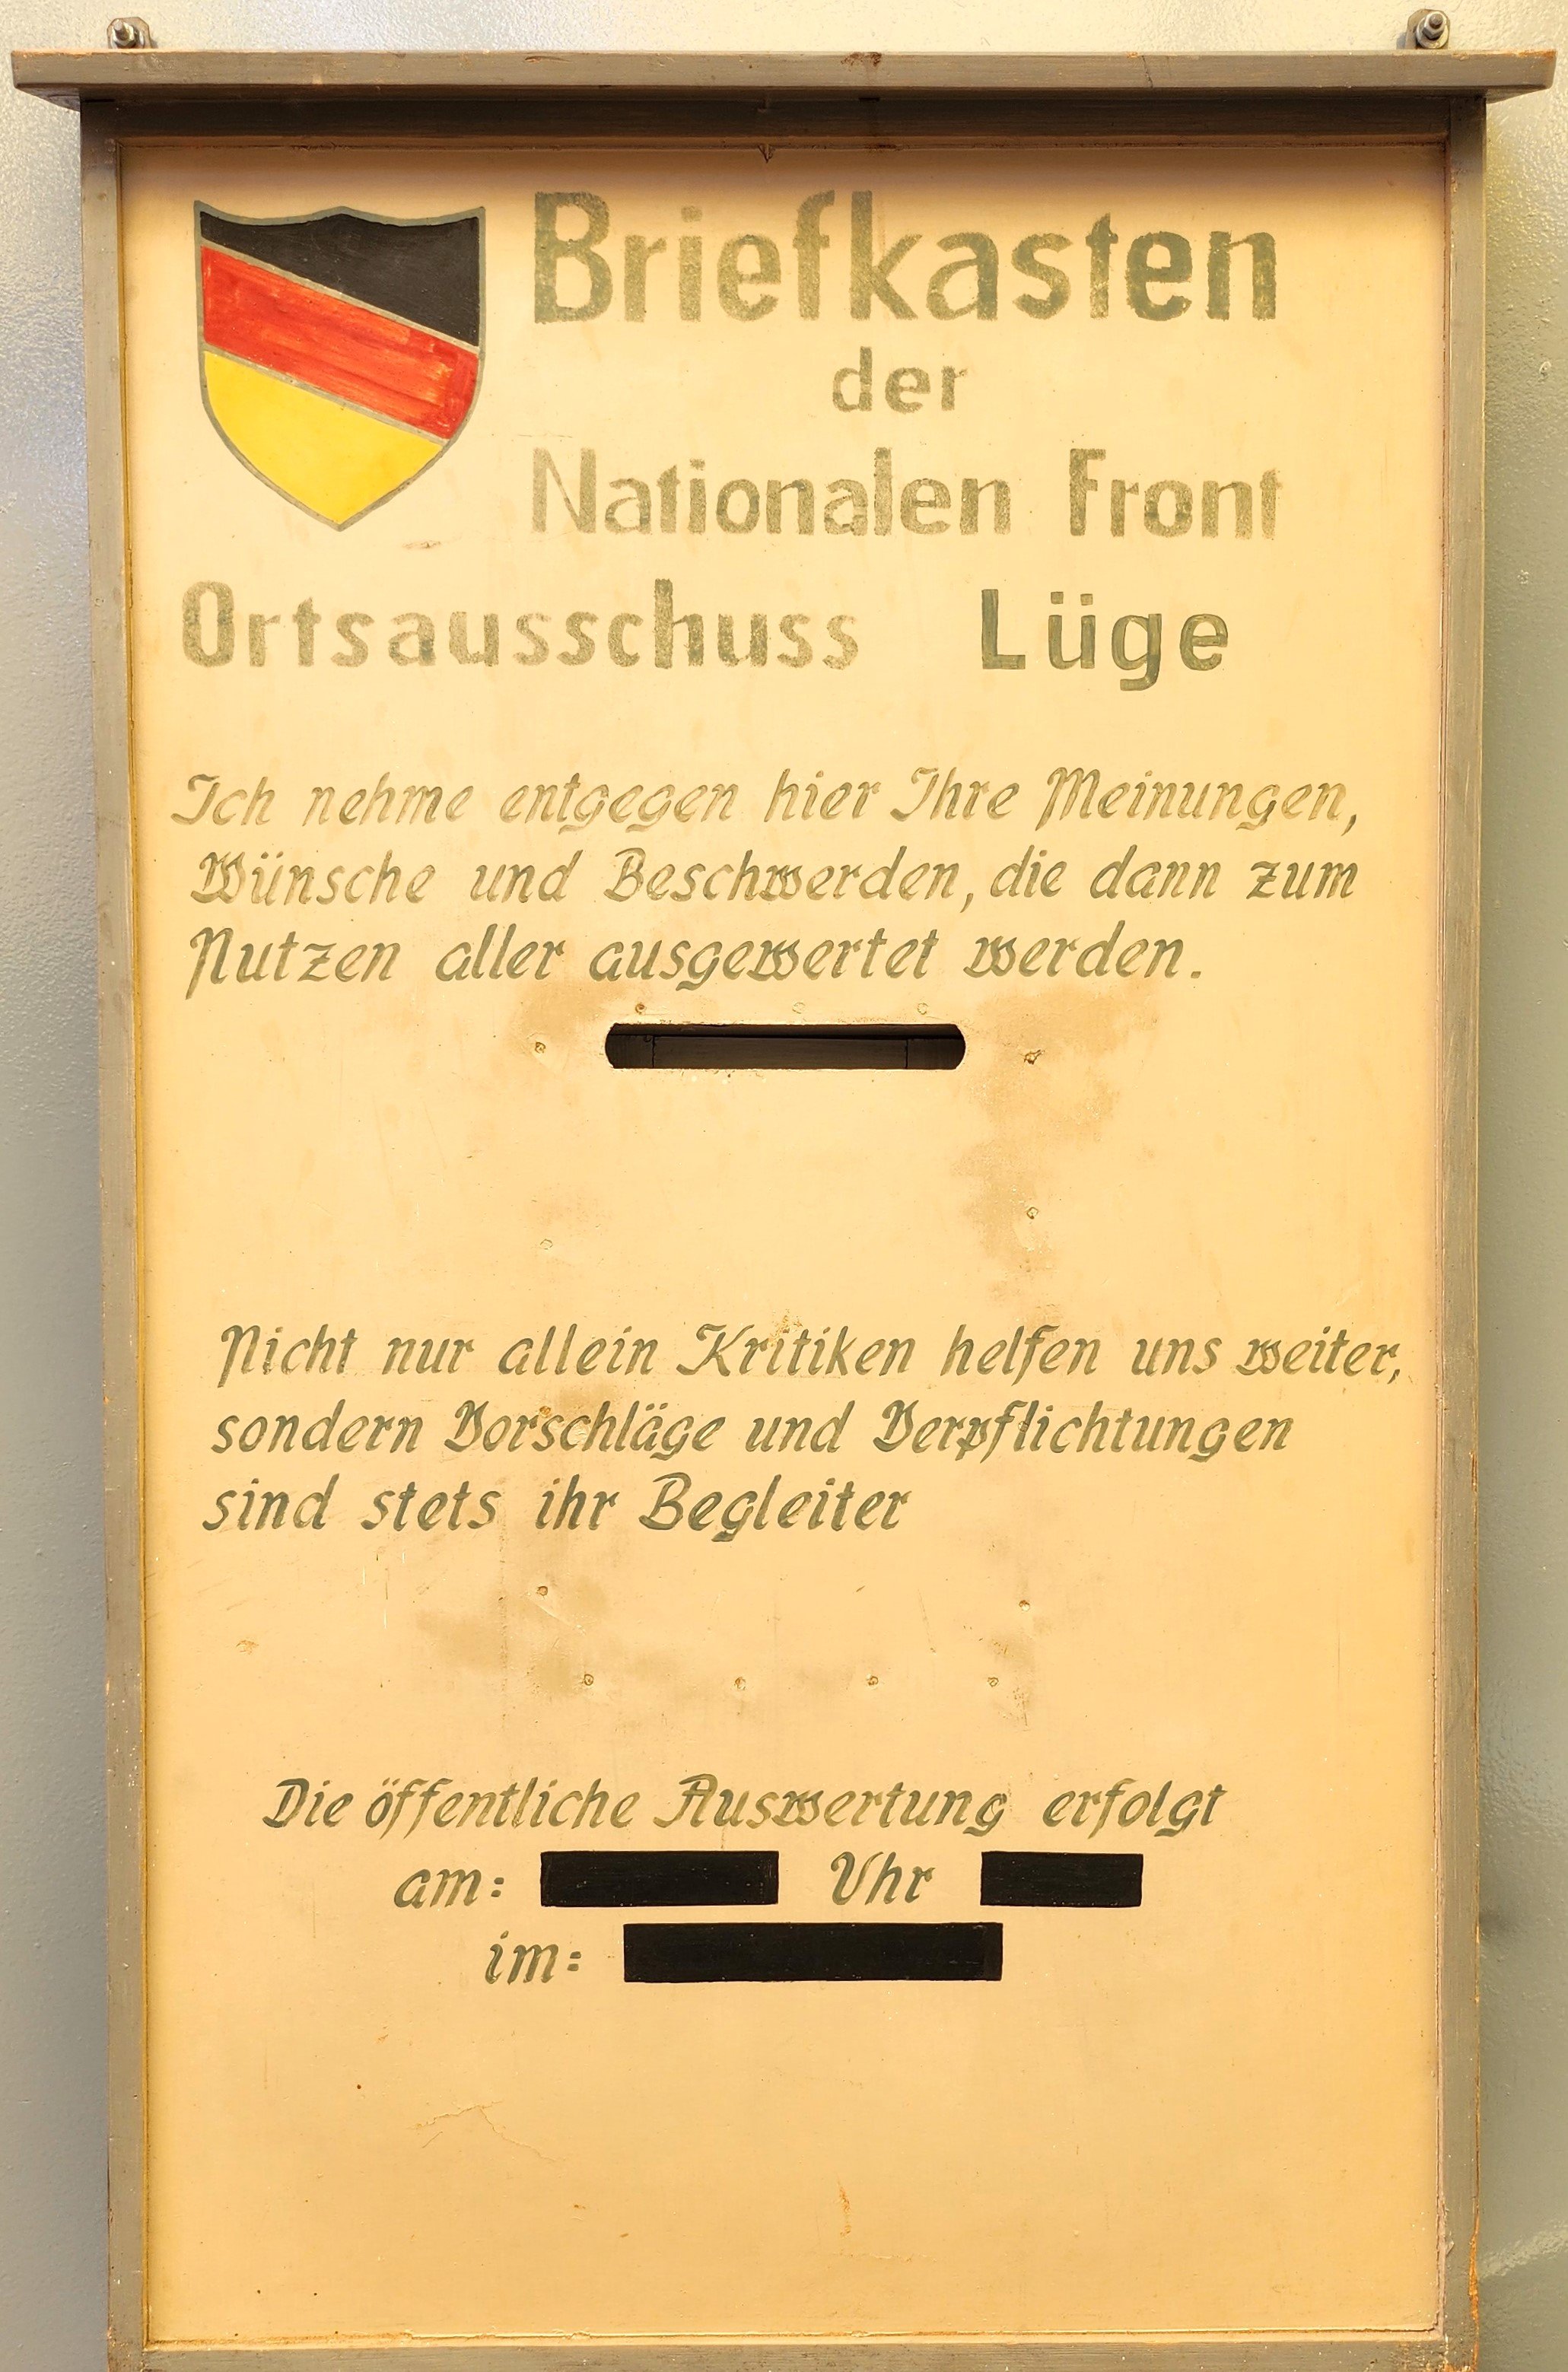 Briefkasten der Nationalen Front, Ortsausschuss Lüge (DDR Geschichtsmuseum im Dokumentationszentrum Perleberg CC BY-SA)